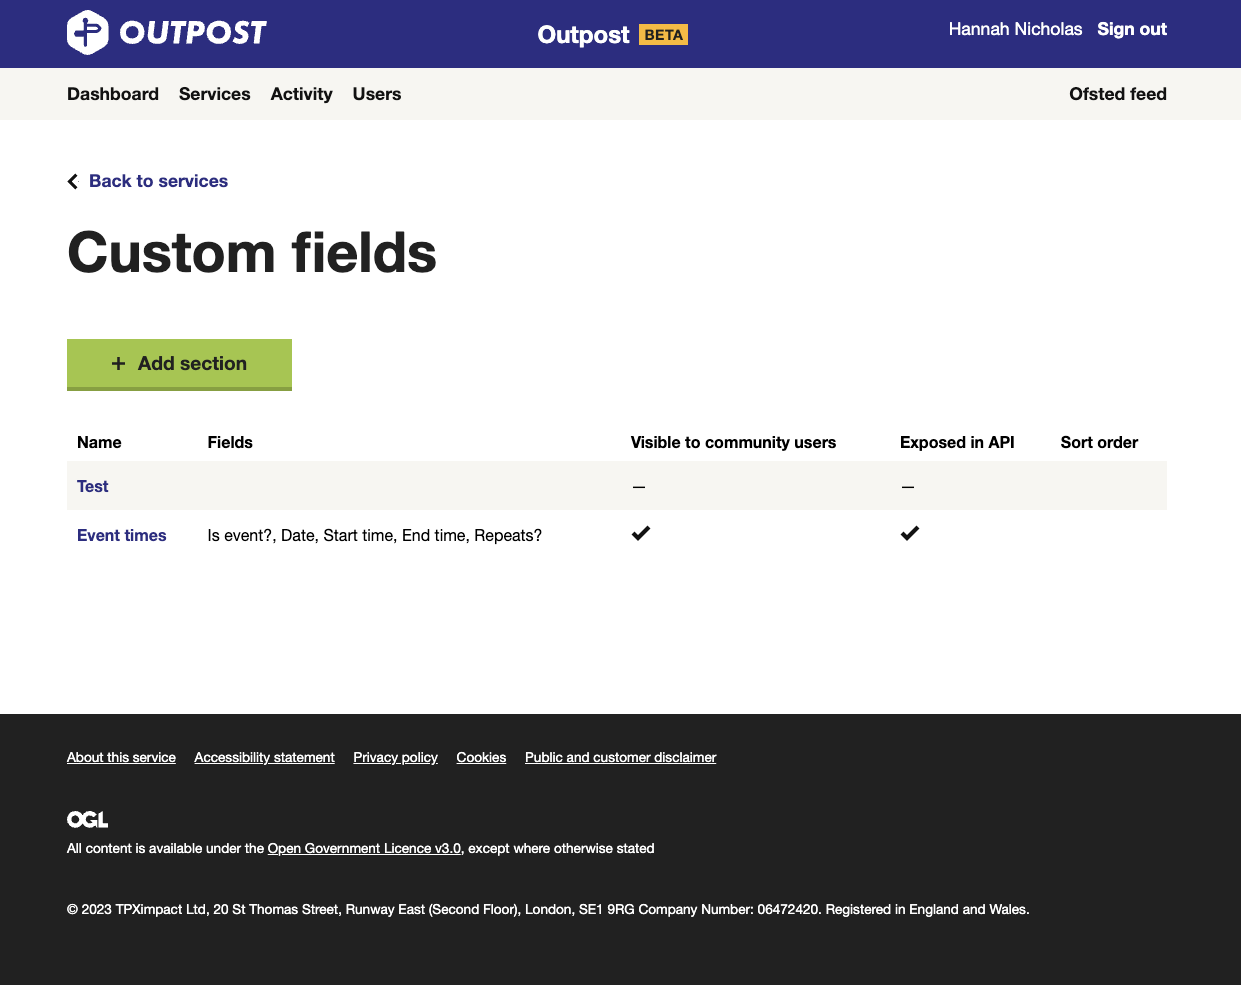 custom-fields.png